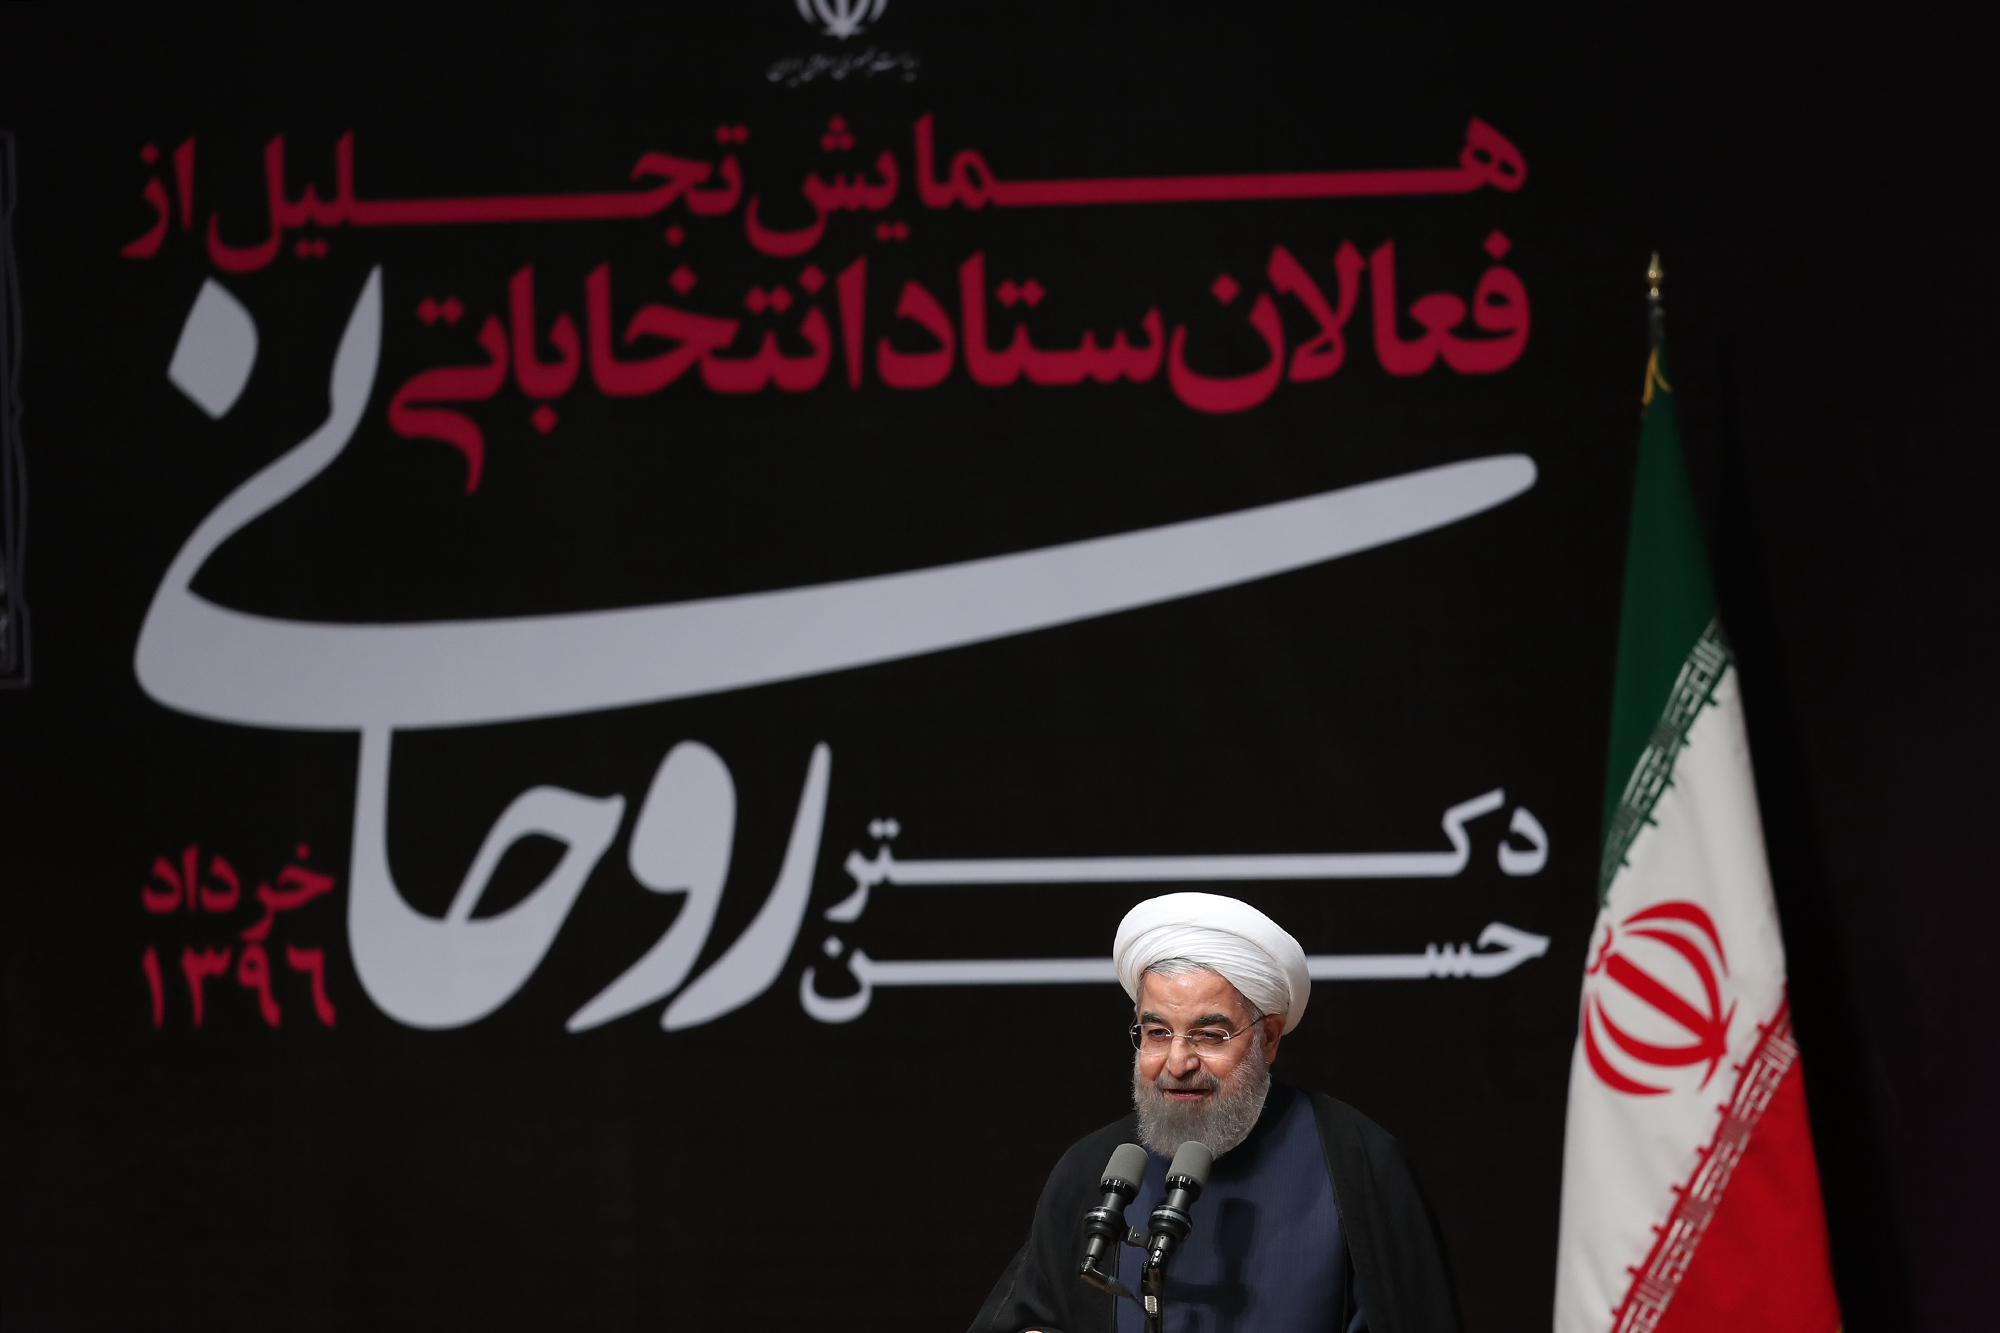 دوران انتخابات سپری شد؛ همه ‏متحد و یکصدا برای توسعه ایران و ساختن آینده بهتر بکوشیم